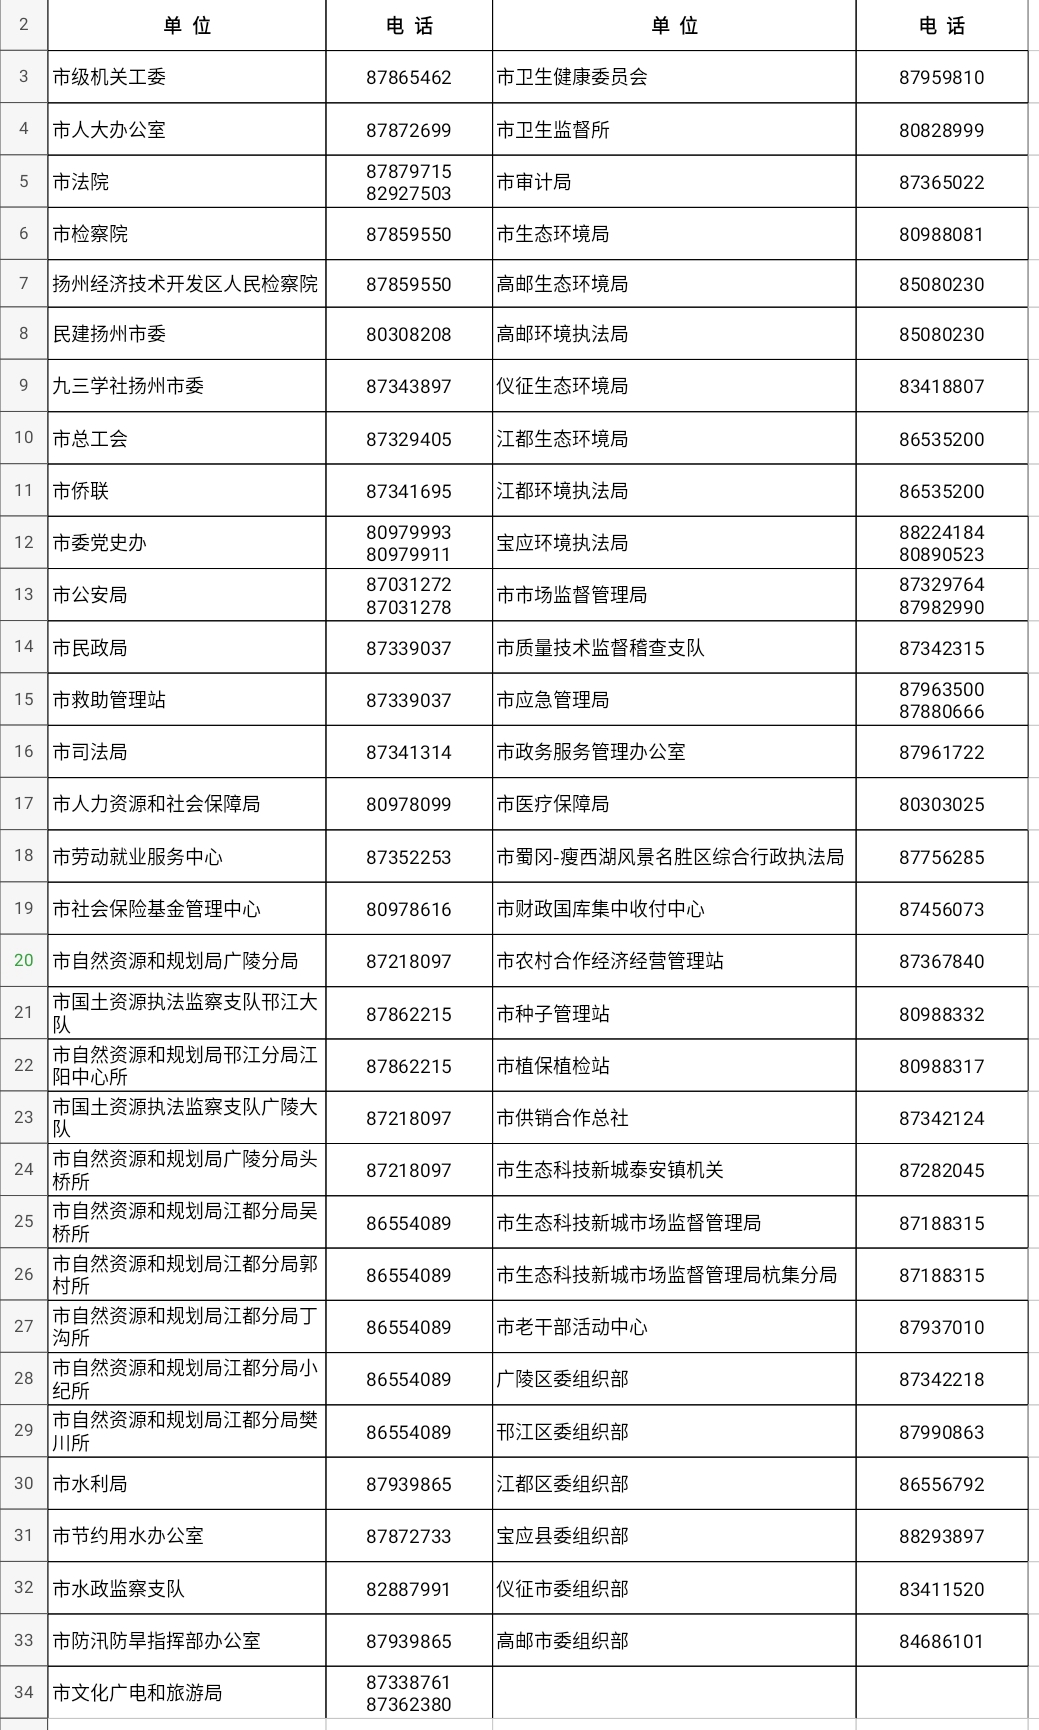 2020年江苏扬州市考试录用公务员和参公管理单位